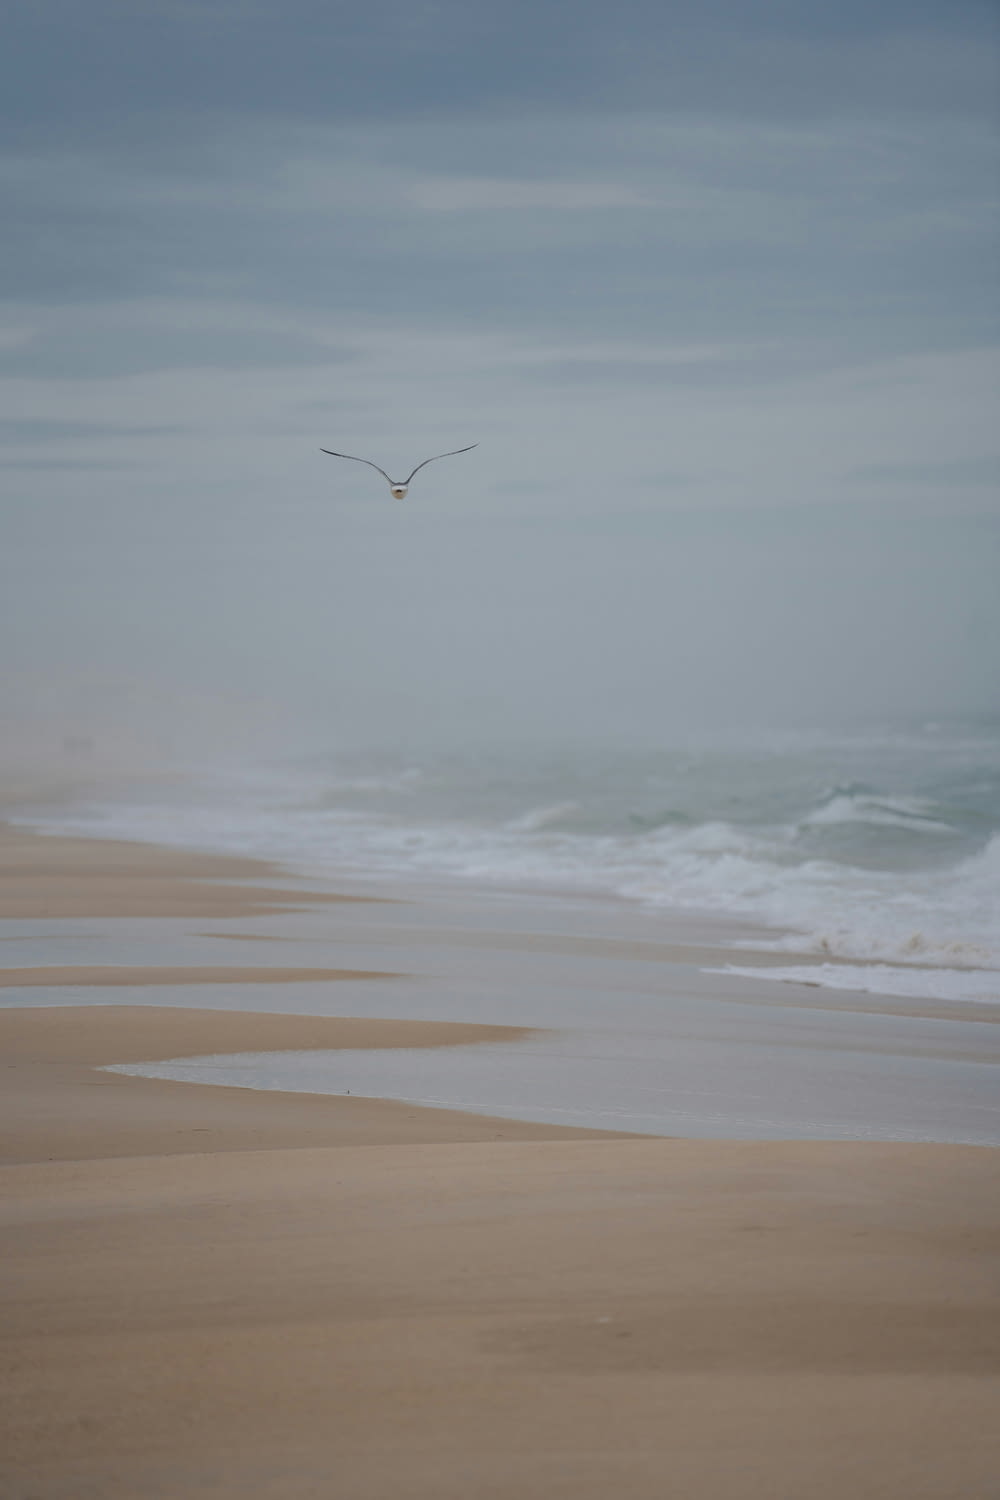 a seagull flying over a sandy beach on a foggy day